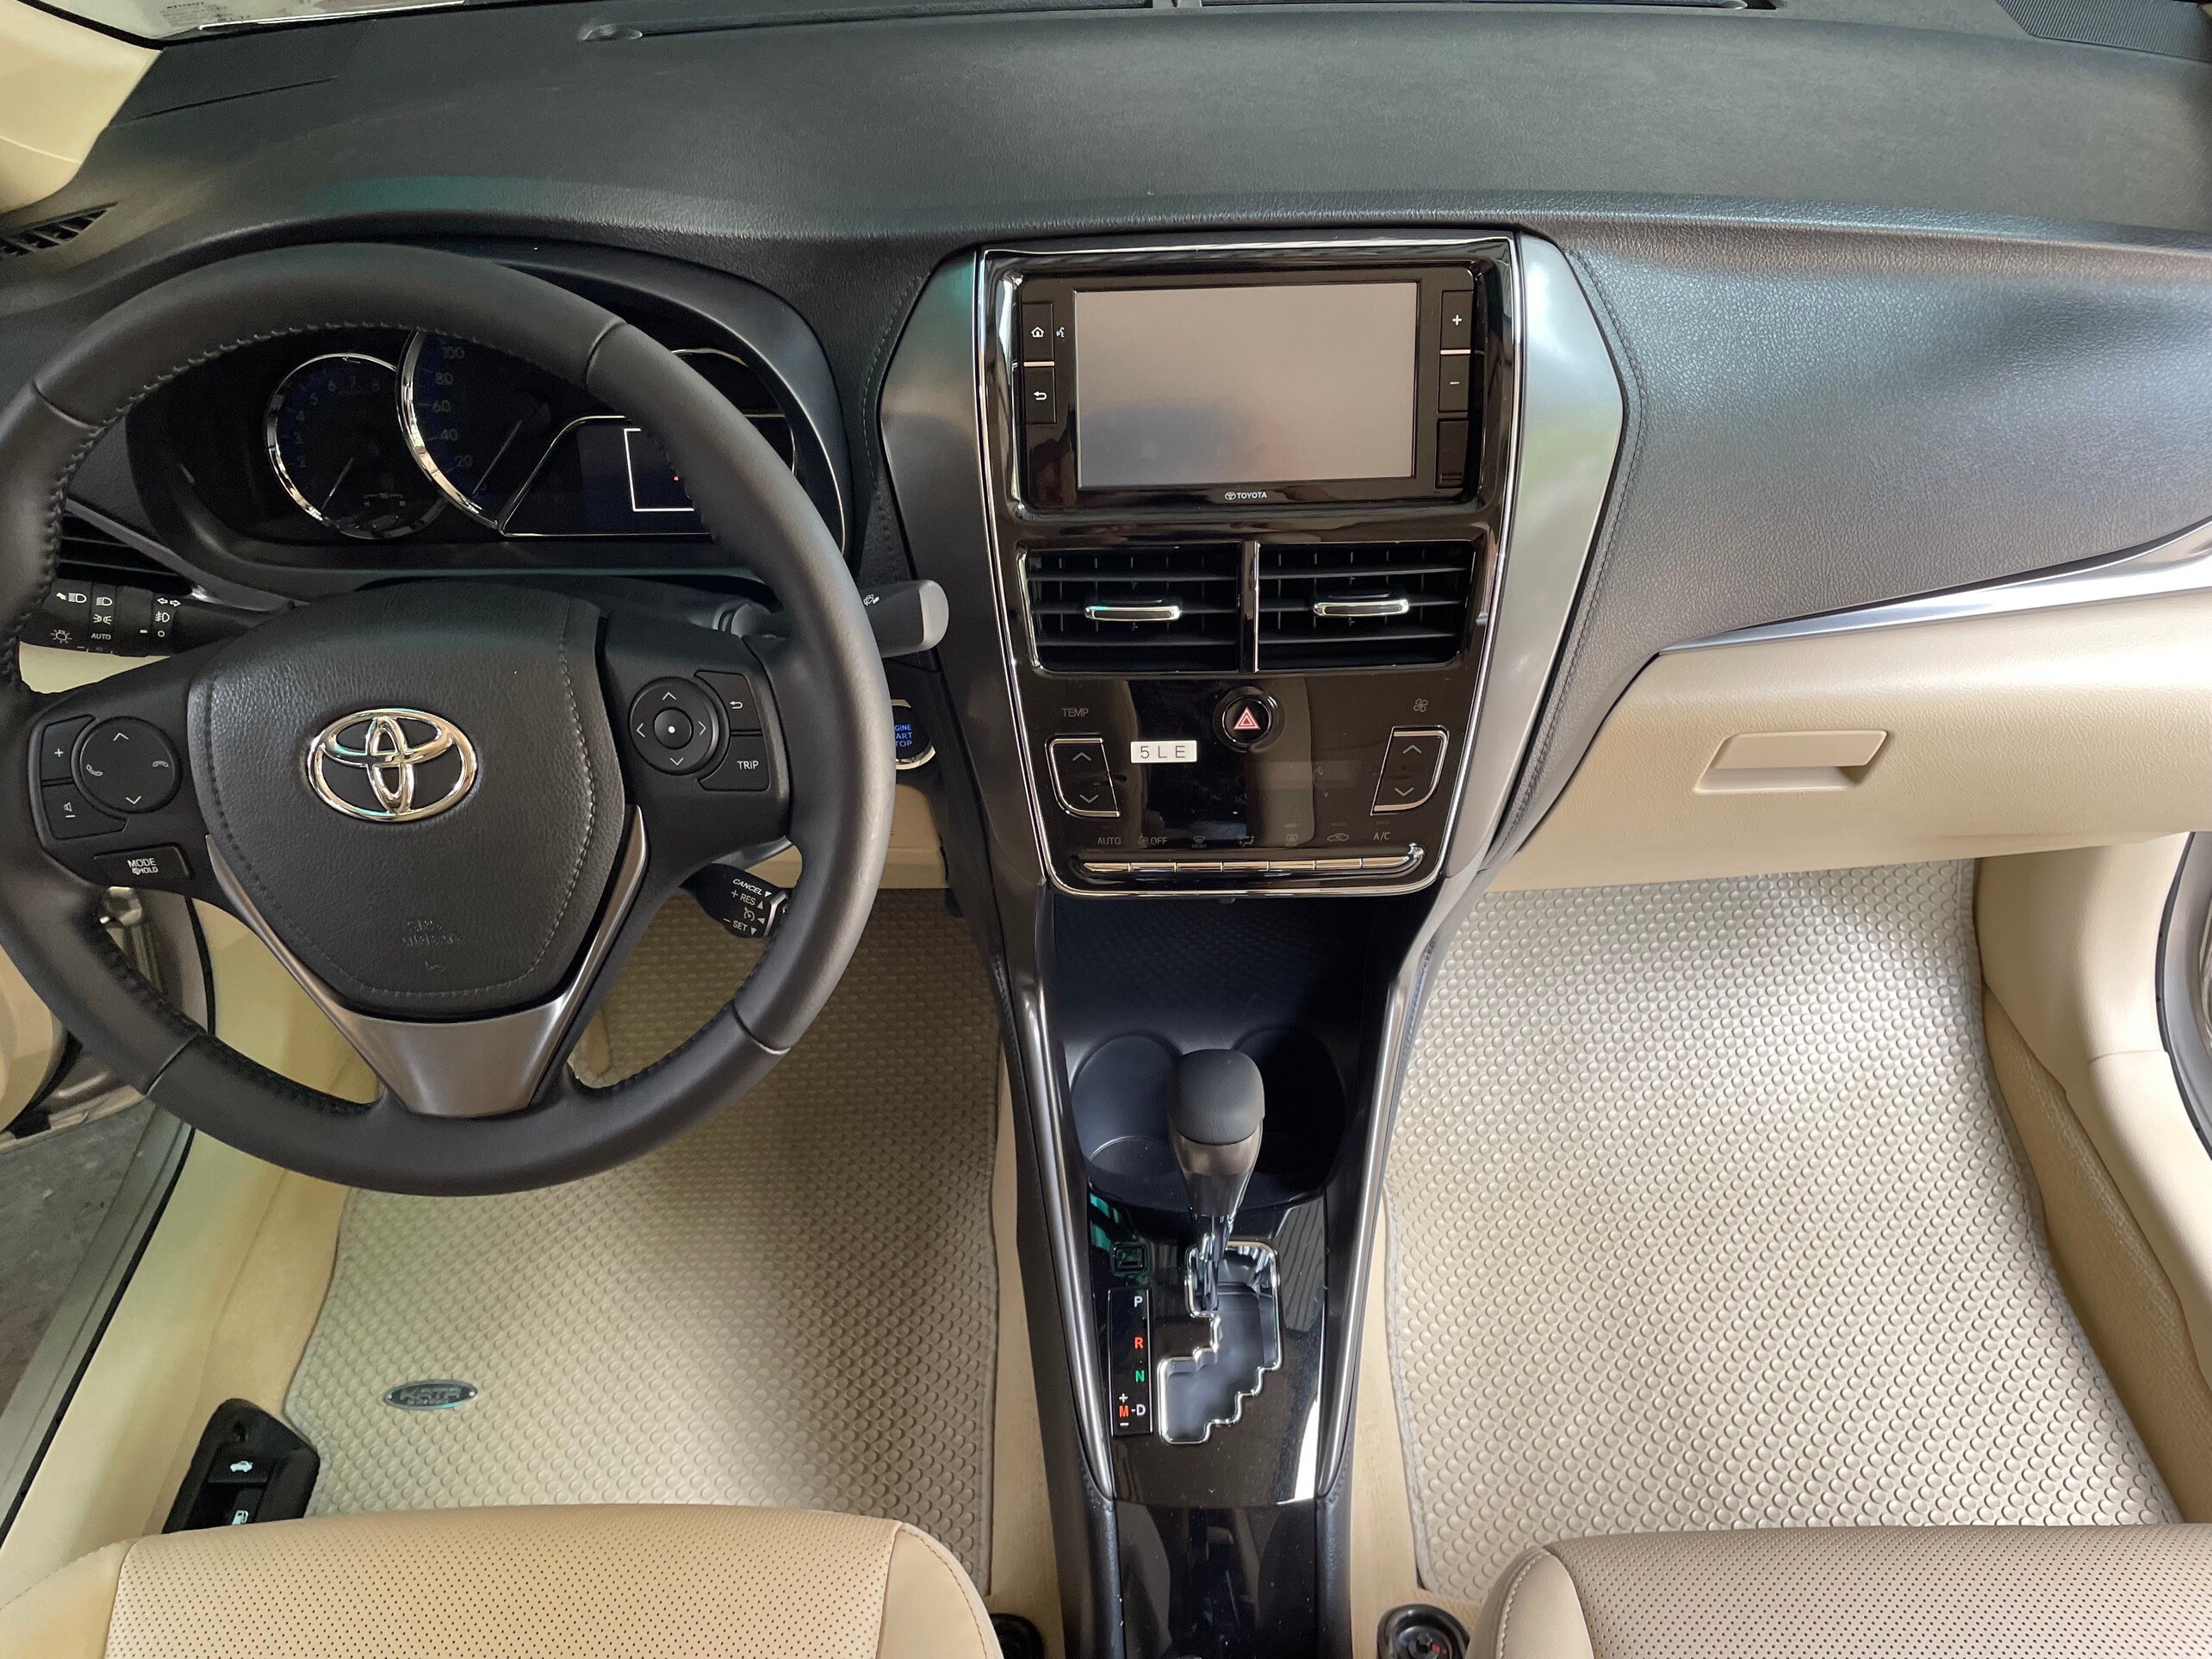 Thảm lót sàn KATA cho xe Toyota Vios- hàng chính hãng không mùi, khít sàn